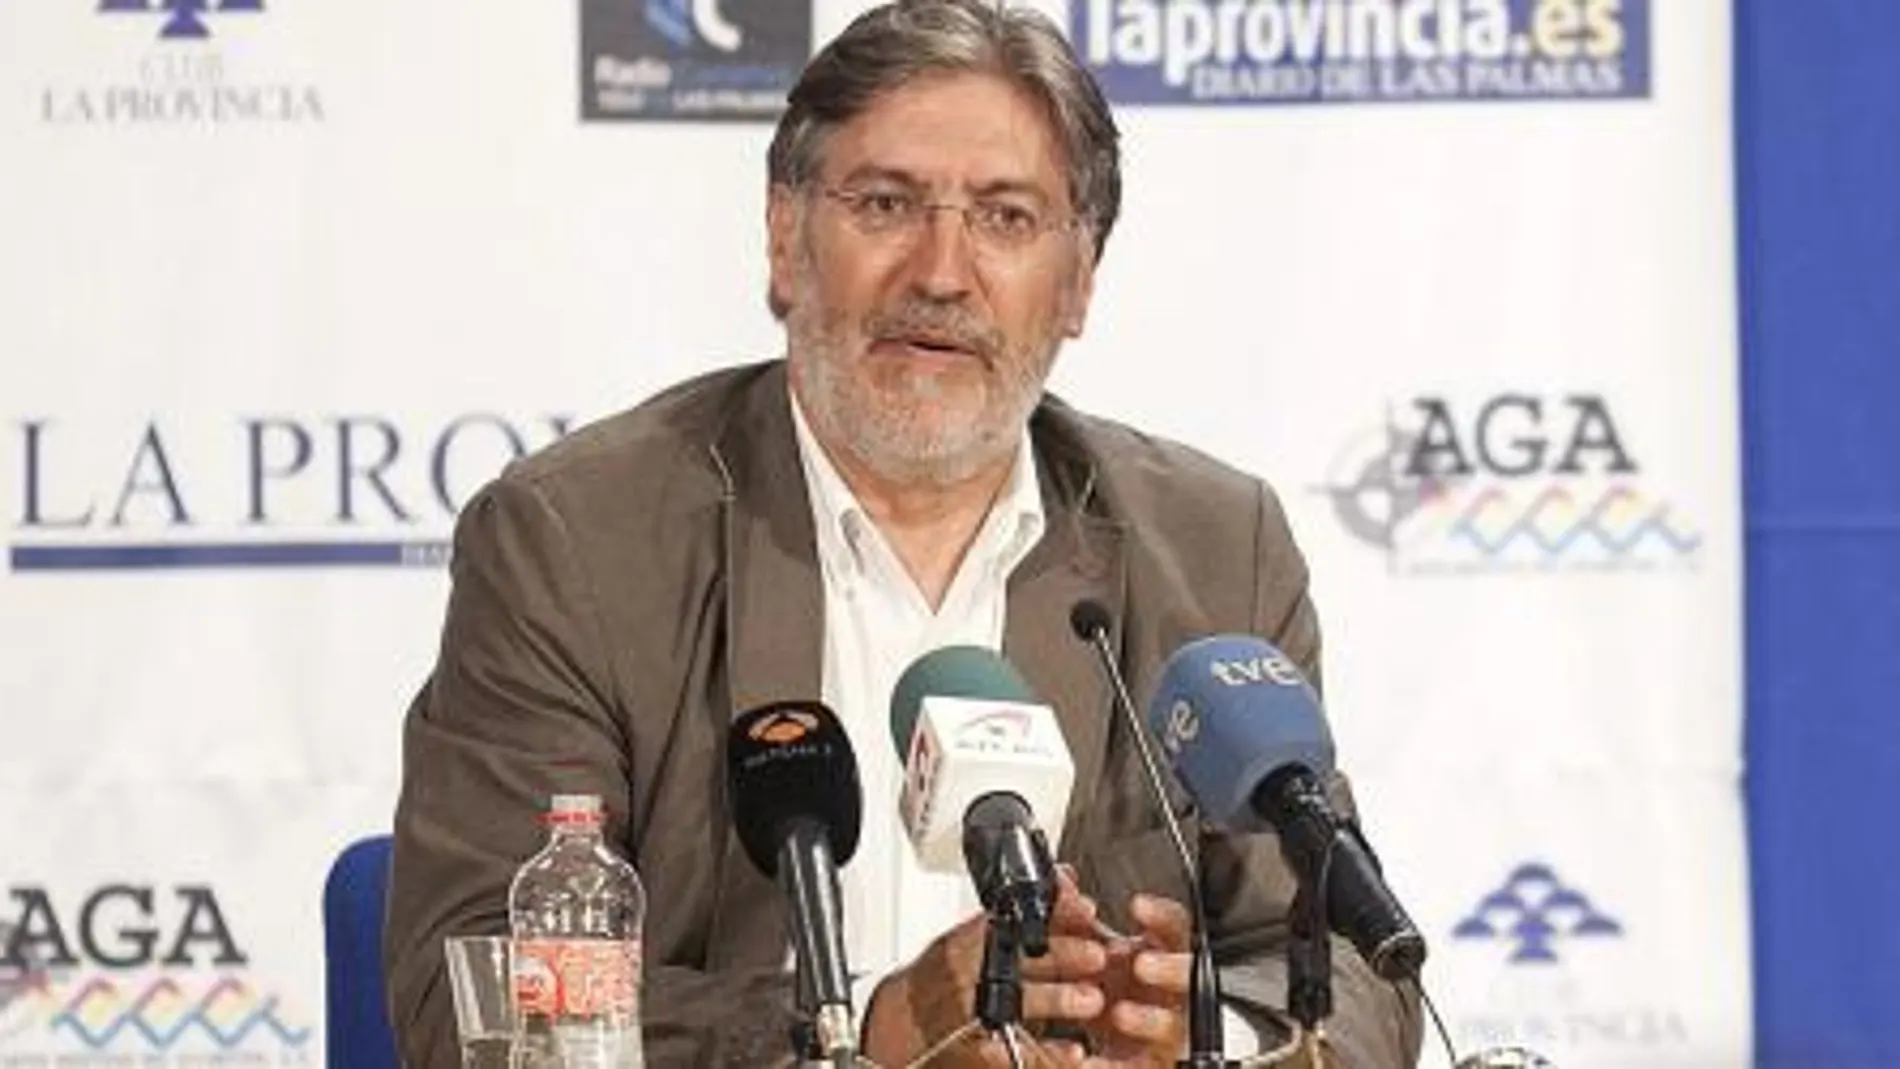 El candidato a secretaría general del PSOE José Antonio Pérez Tapias, durante u acto de campaña.